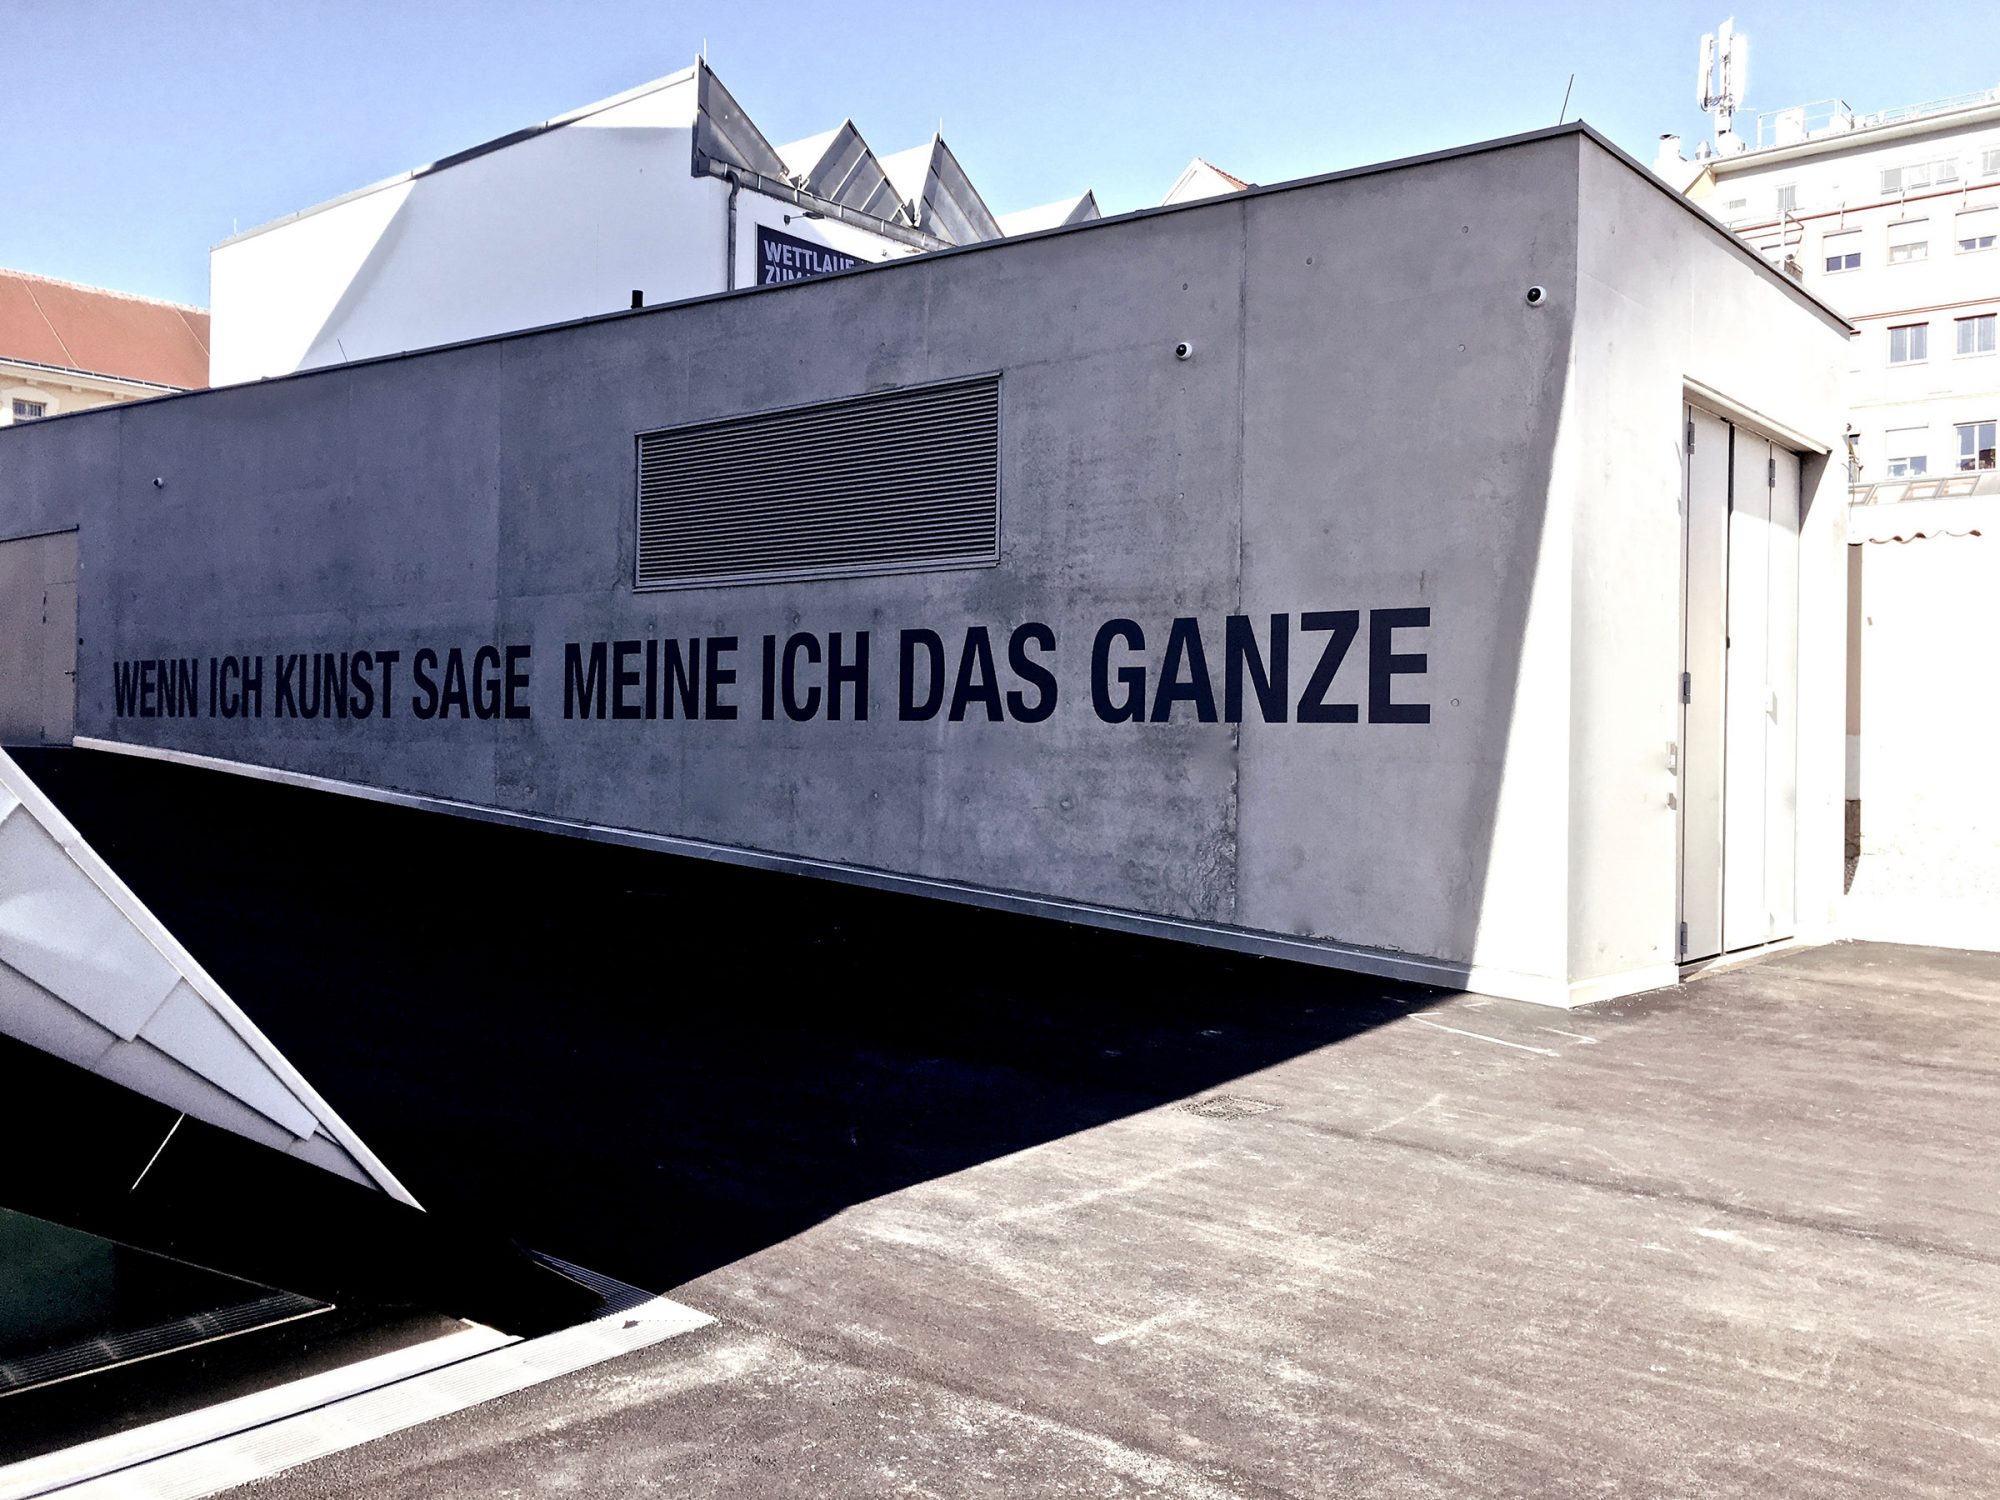 Textinstallation, 2019, Landesgalerie Niederösterreich / State Gallery of Lower Austria